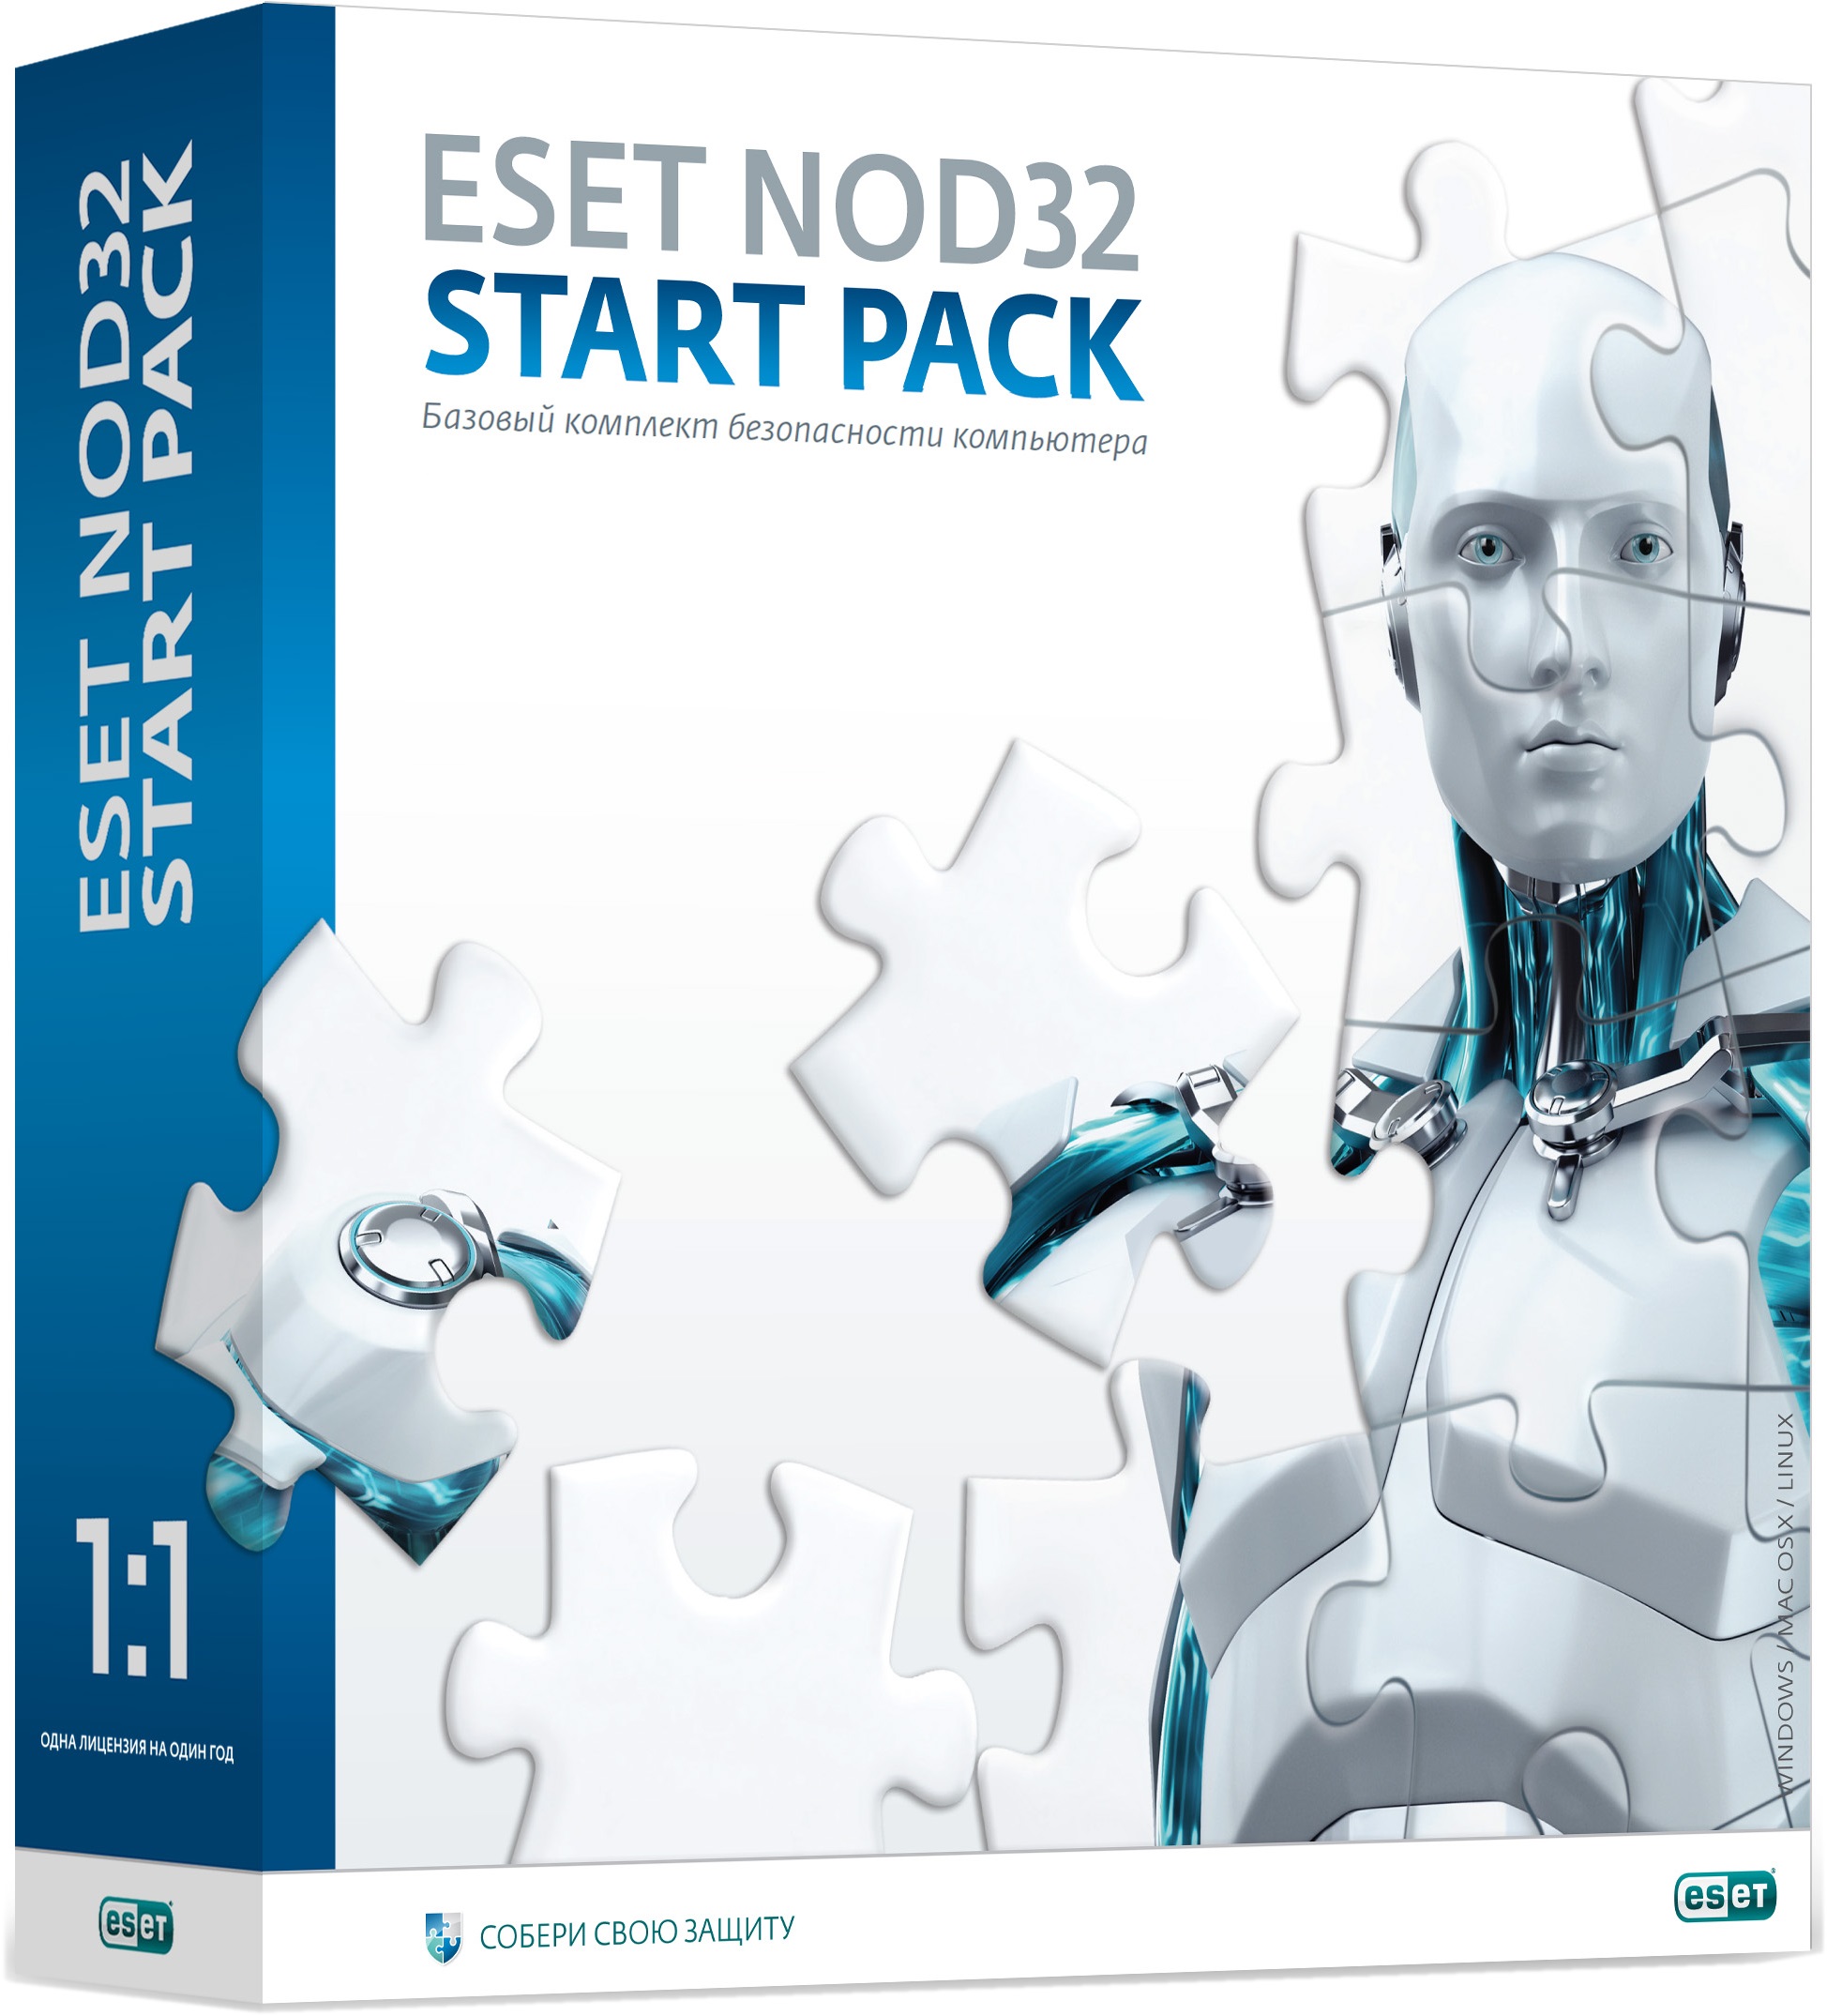 Программный продукт ESET NOD32 Start Pack - базовый комплект безопасности компьютера,  лицензия на 1 год на 1ПК